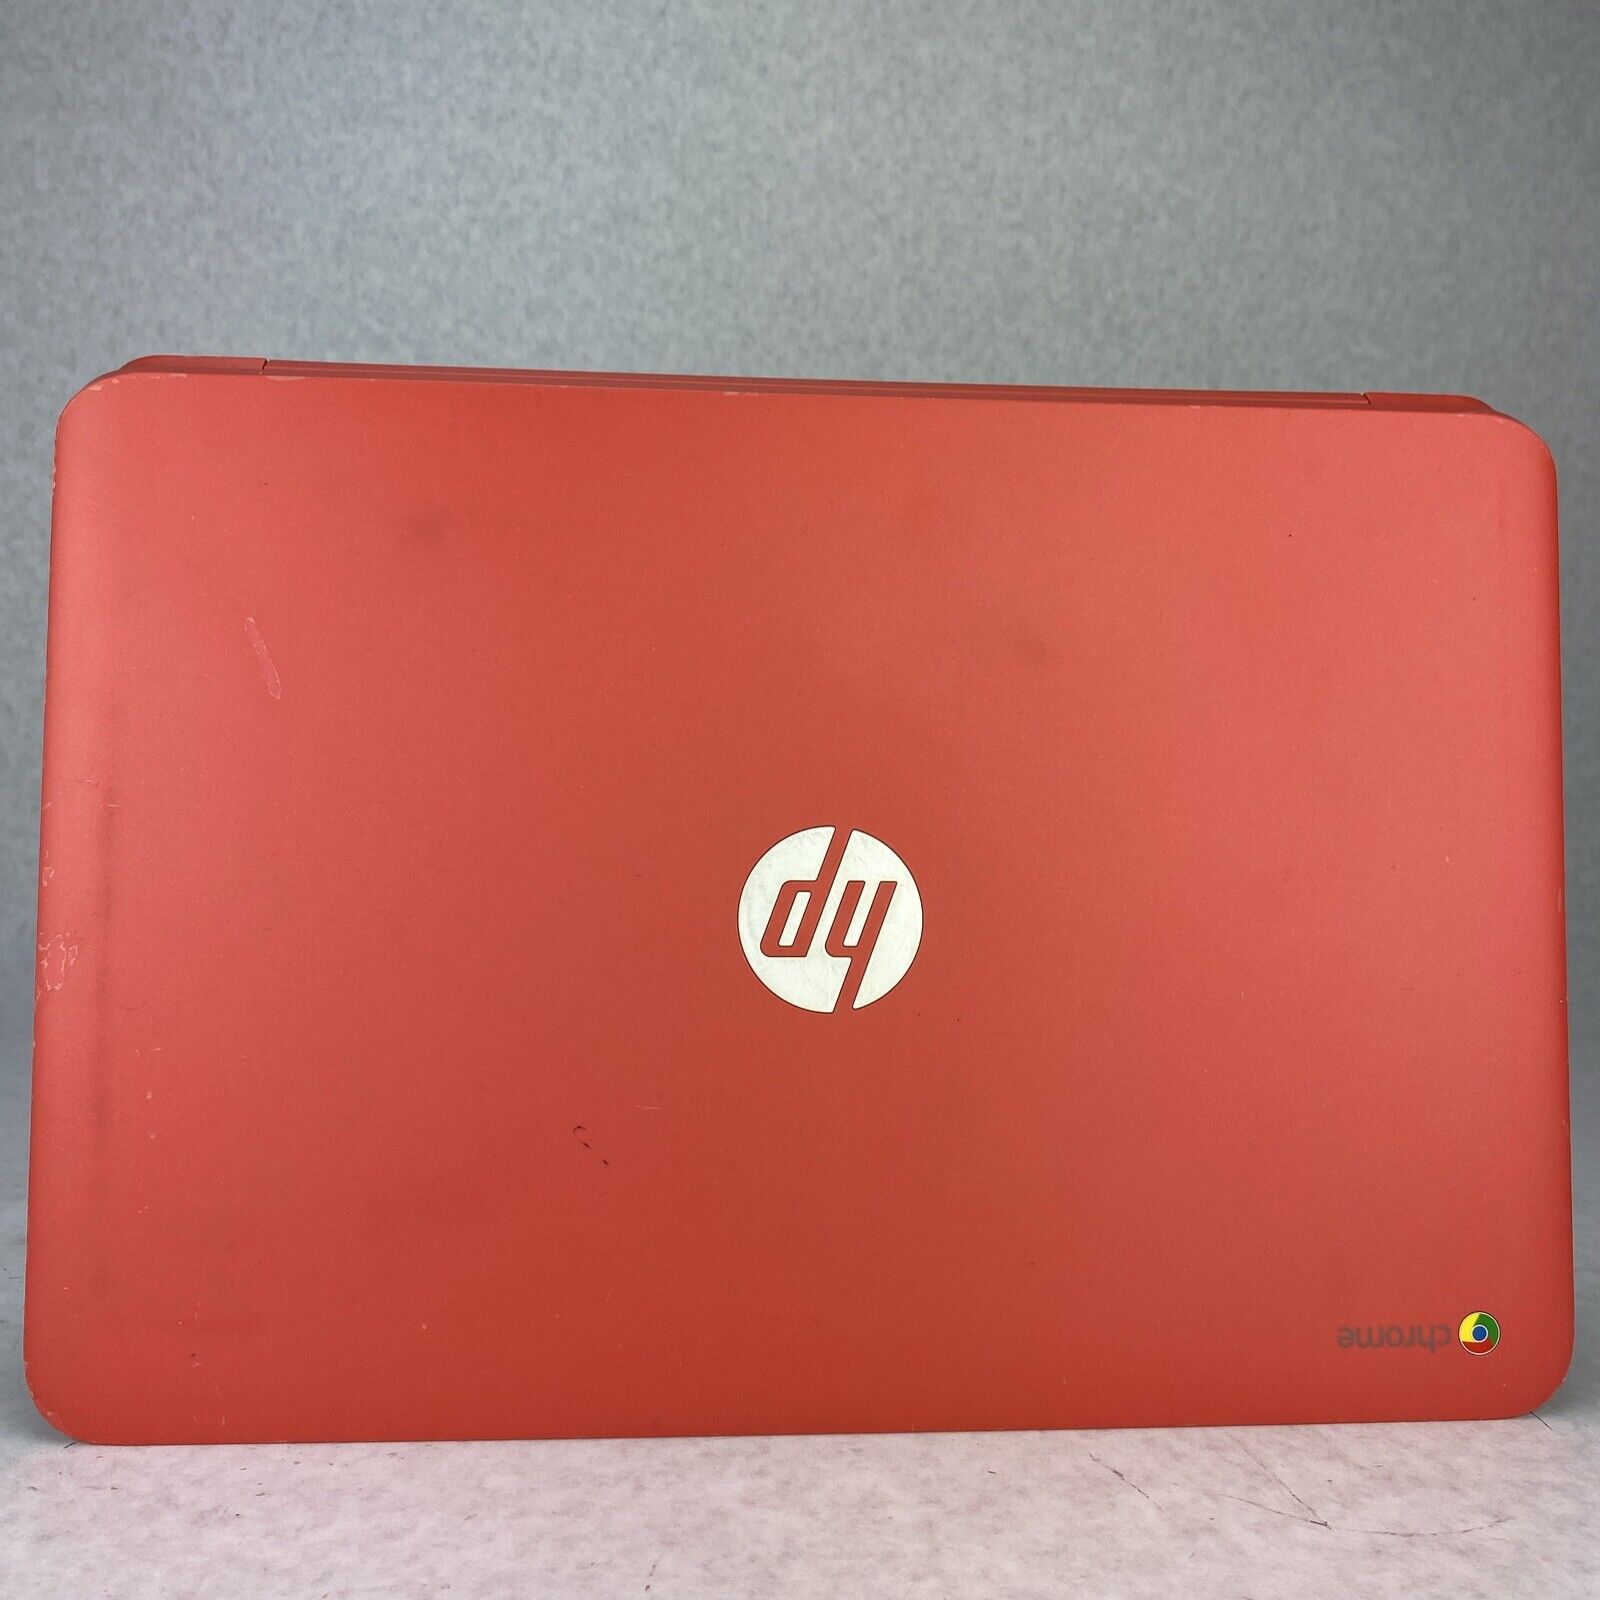 HP ChromeBook 14-q049wm Intel Celeron 2955U 1.40GHz 4GB RAM 16GB W/AC Adapter